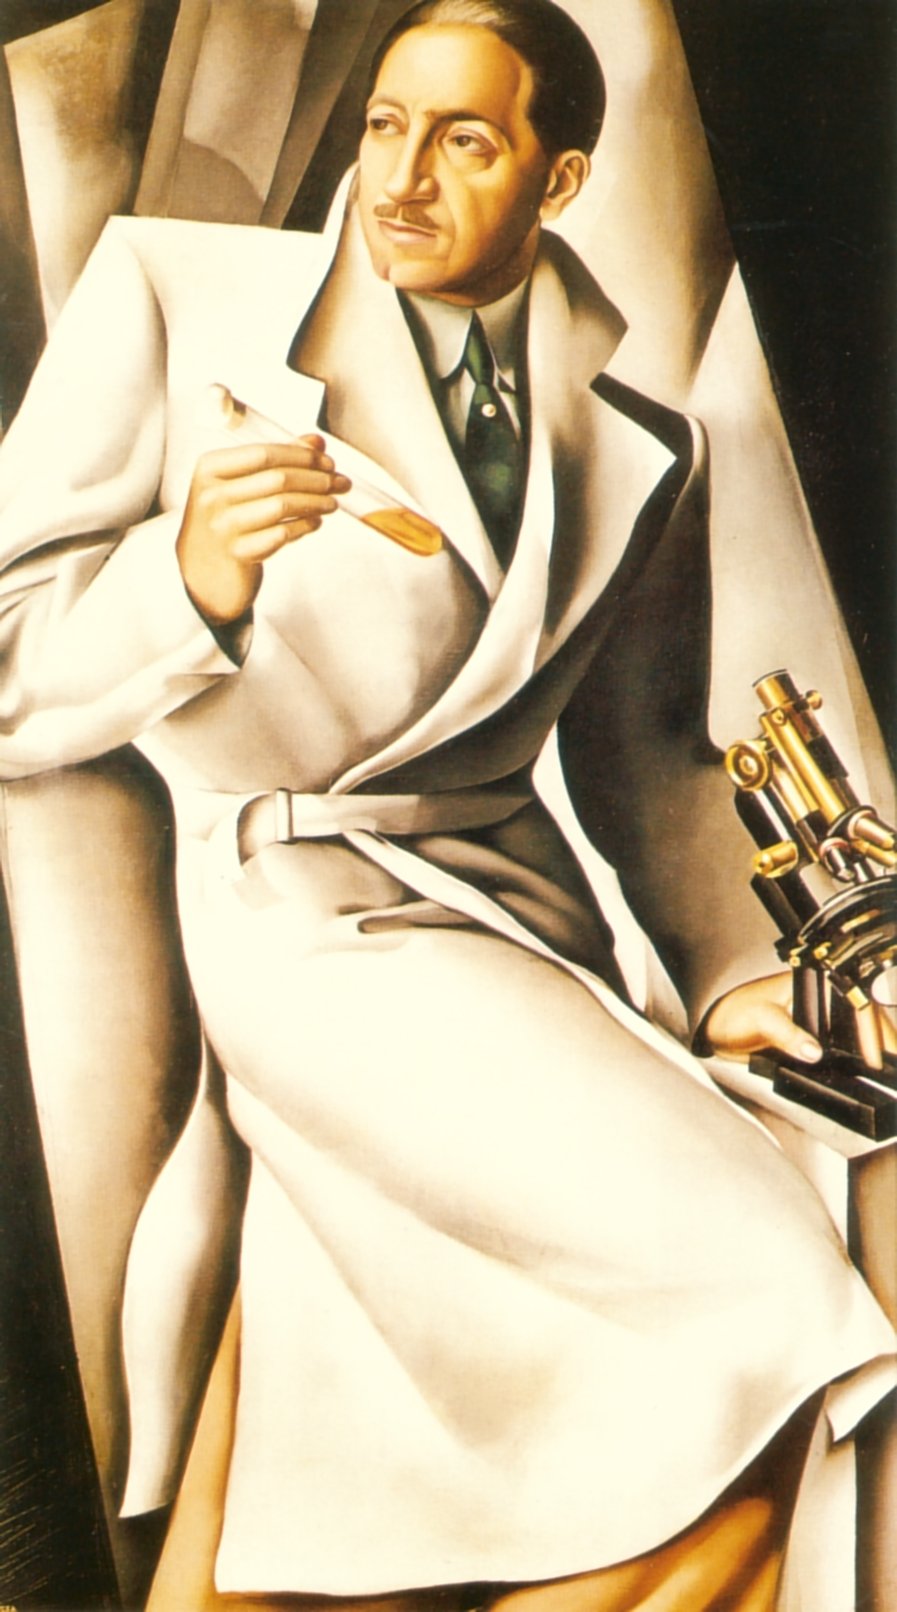 Retrato del Dr. Boucard by Tamara de Lempicka - 1929 Colección privada